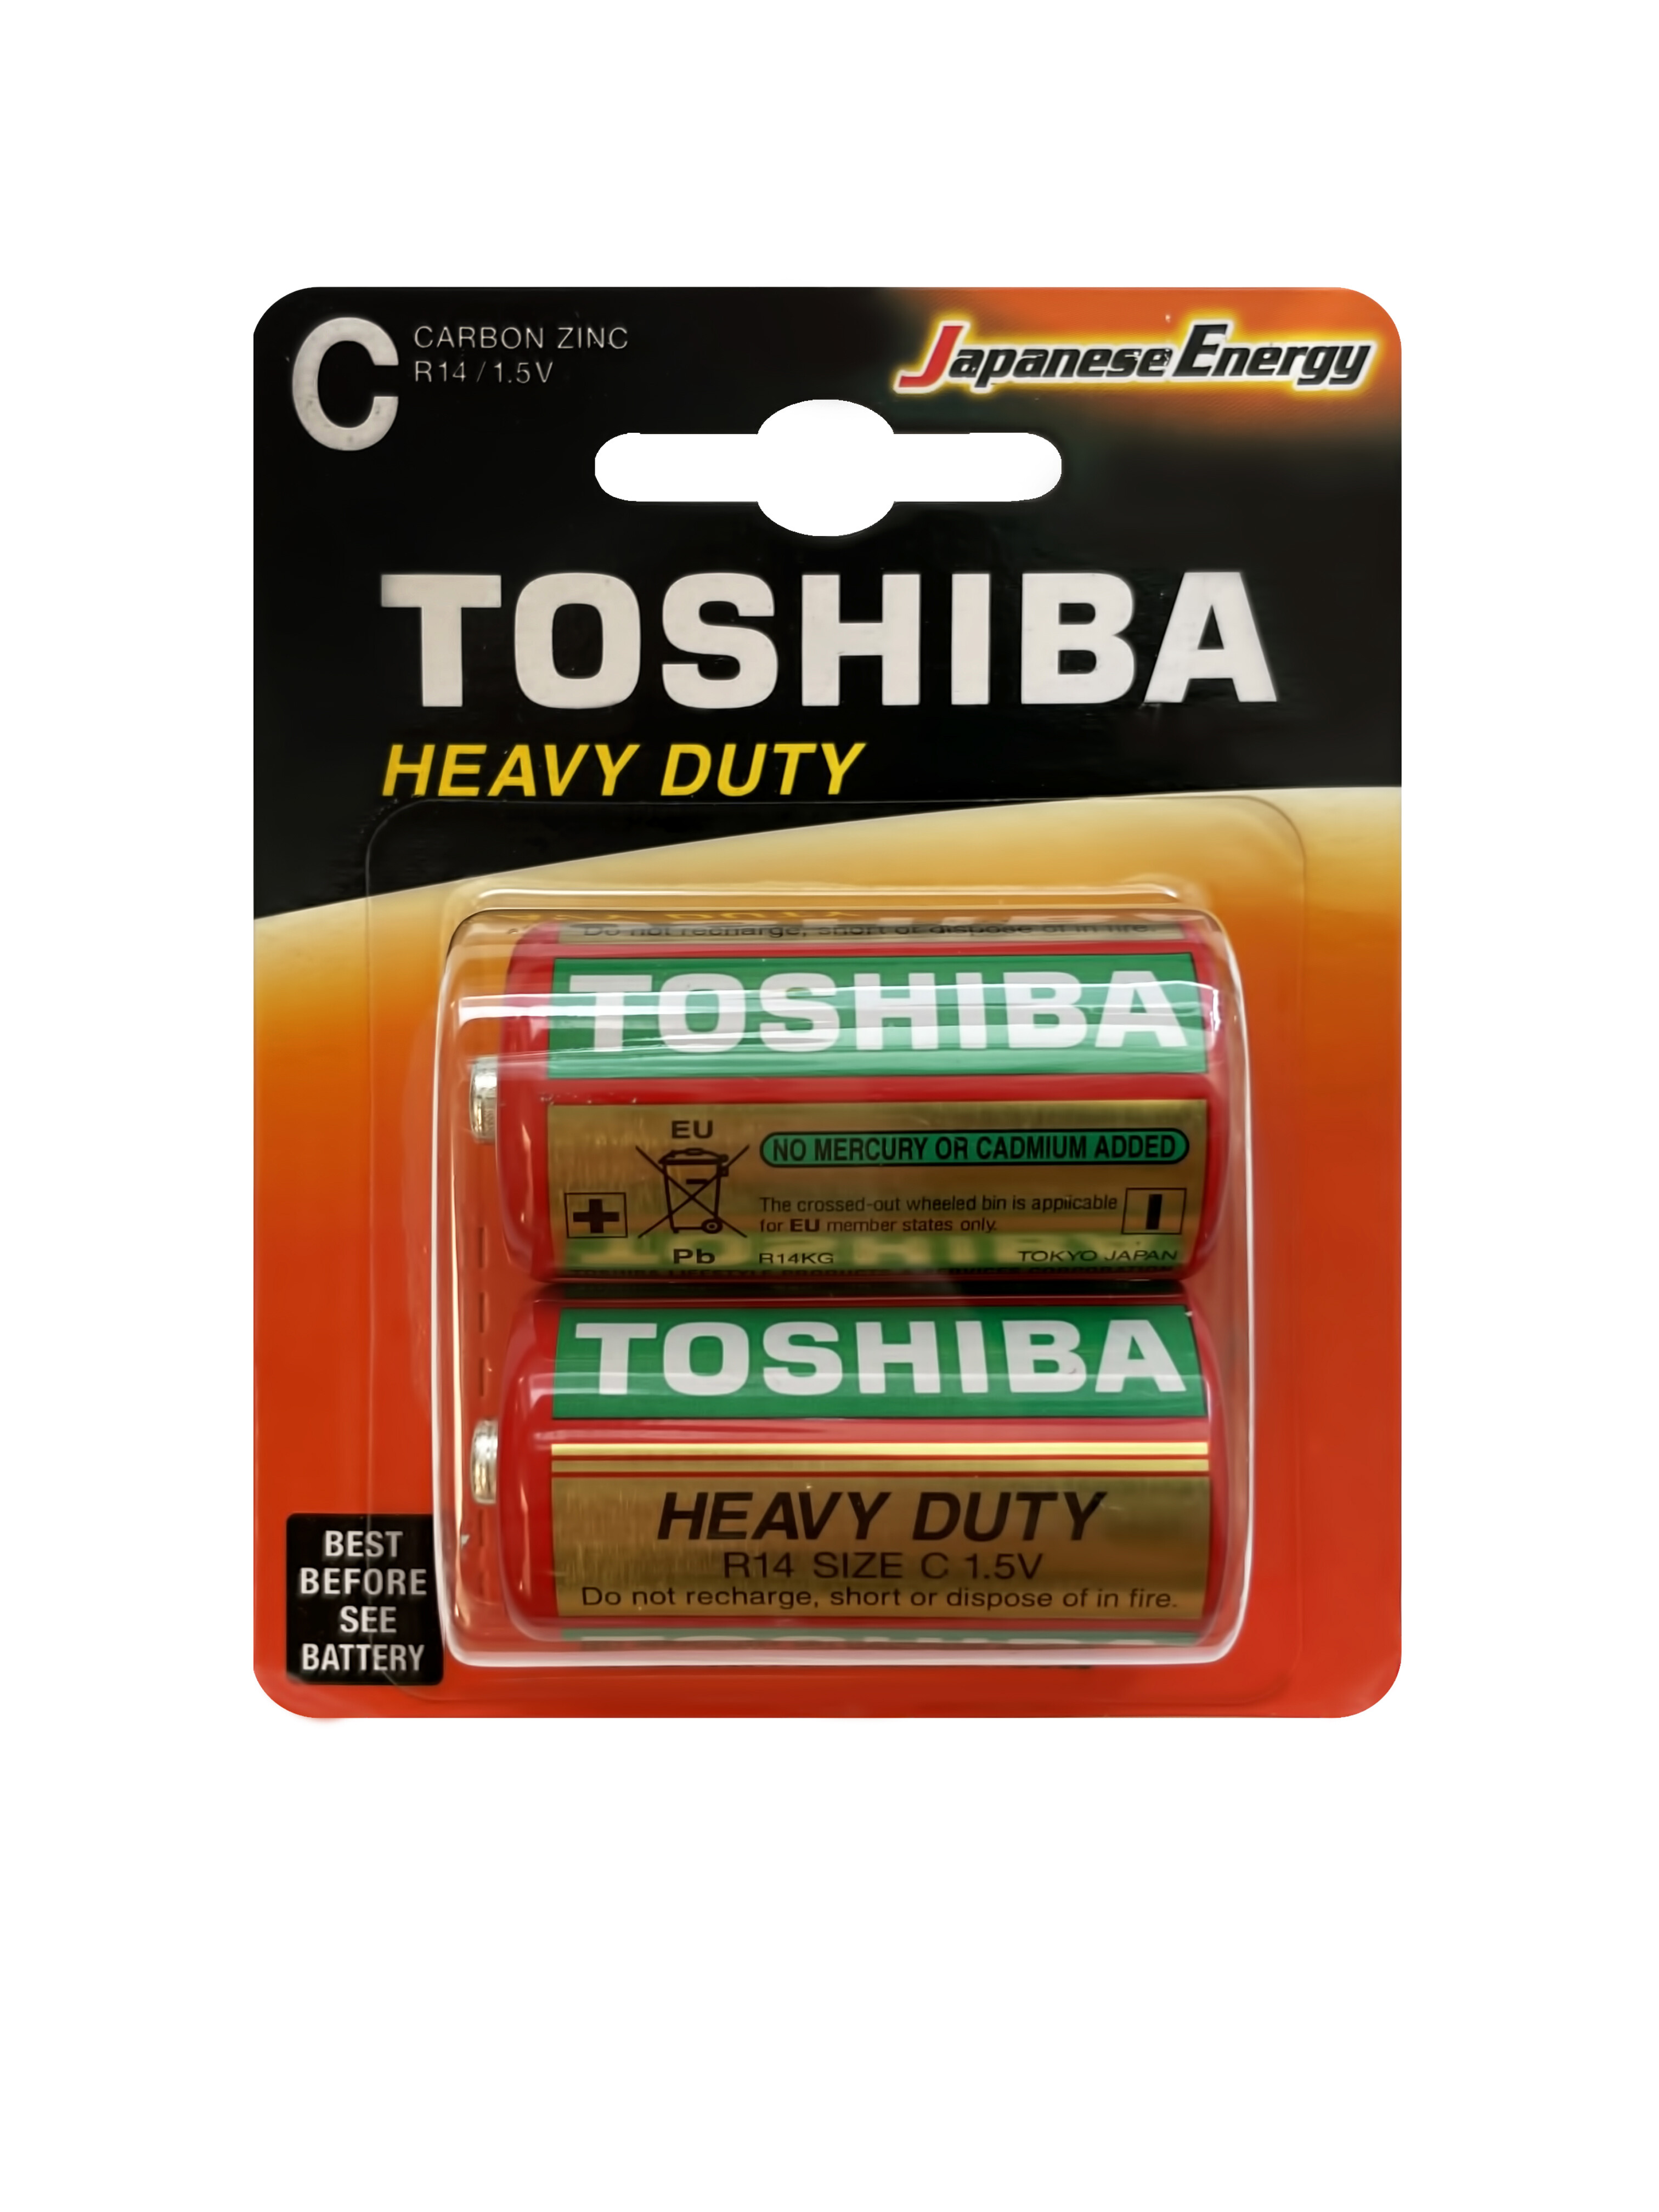 Батарейки Toshiba R14 солевые (zinc) ДЮЙМОВОЧКА Heavy Duty (2шт) C 1,5V глазки двойные дюймовочка